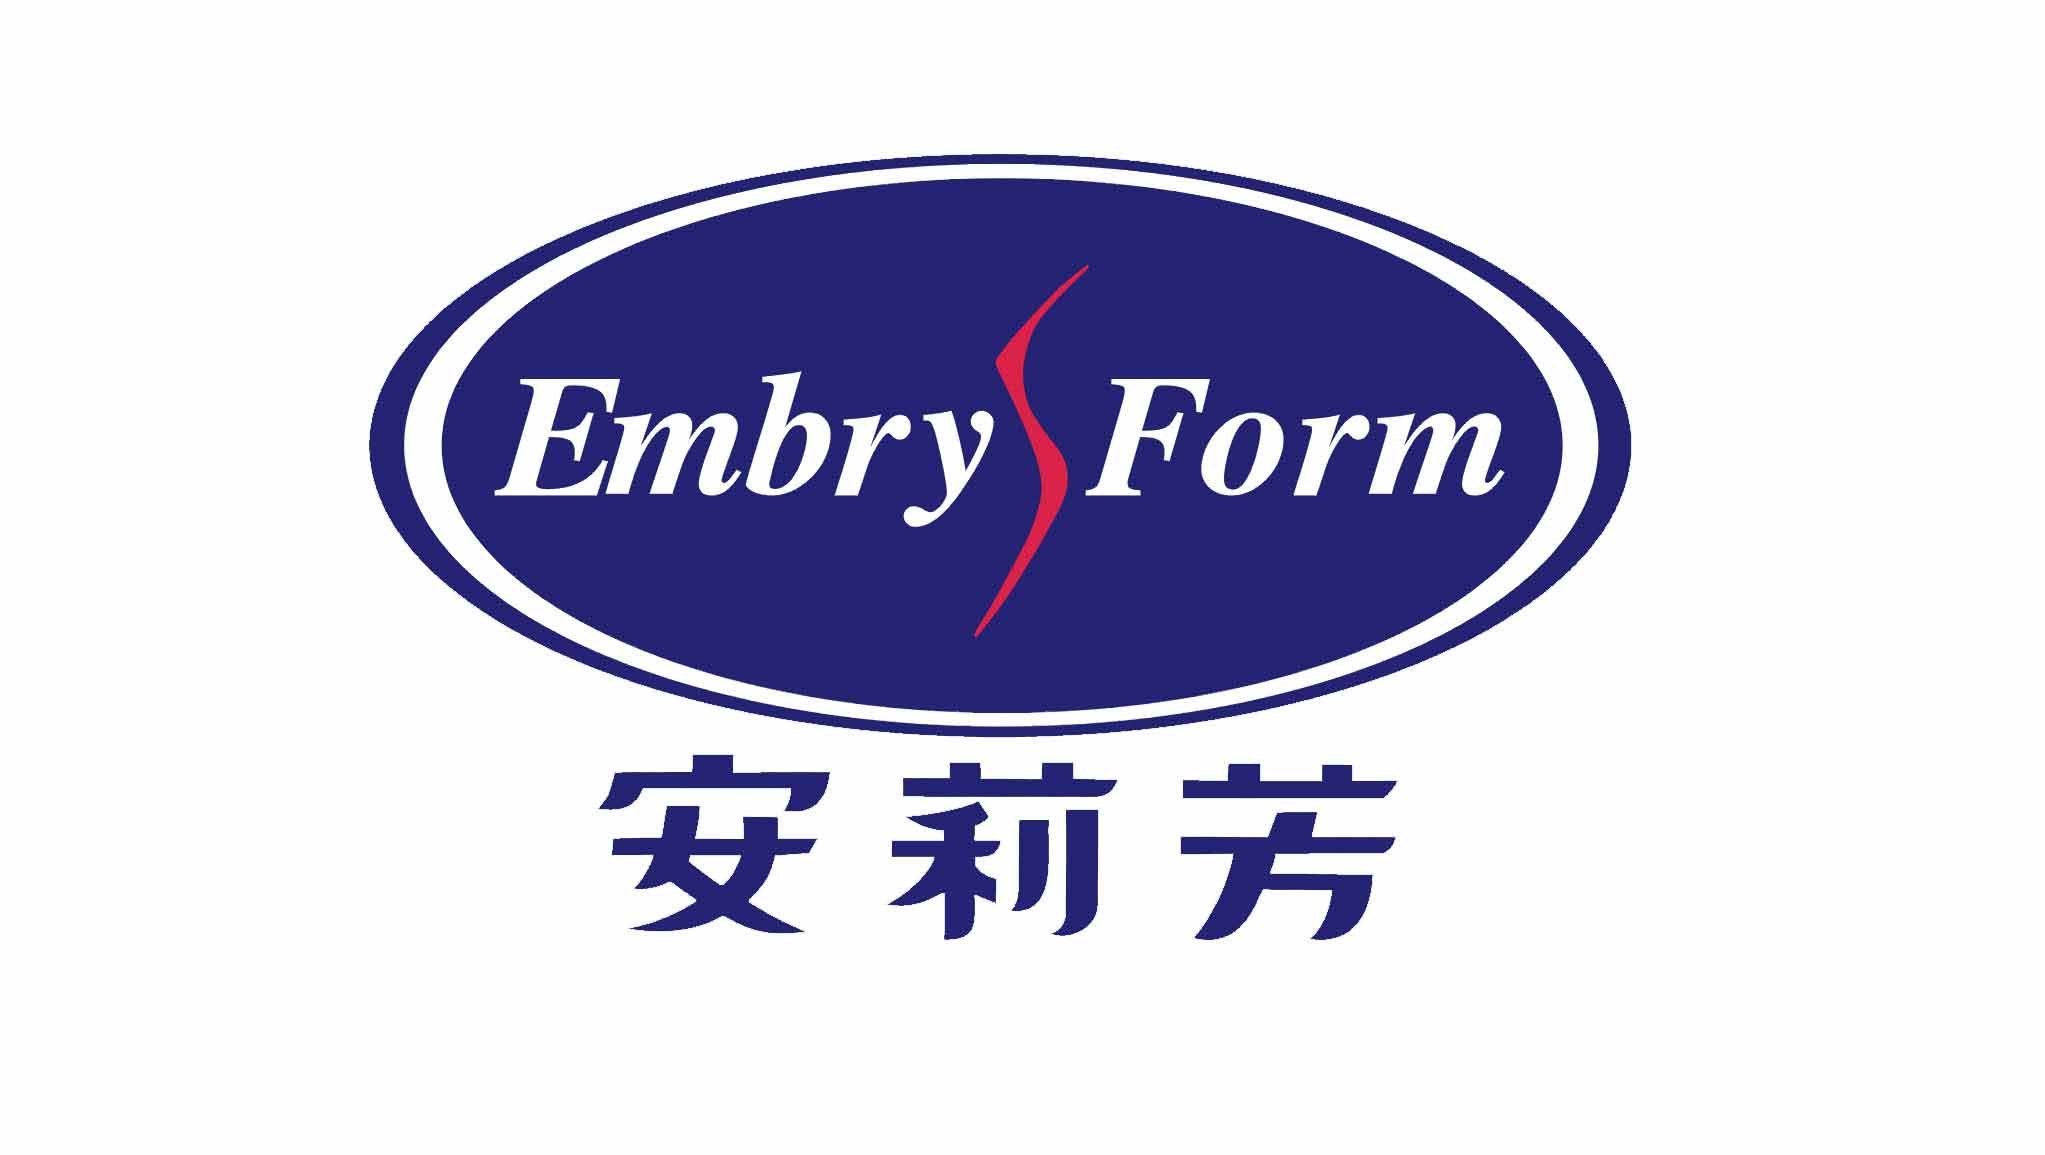 Embryform